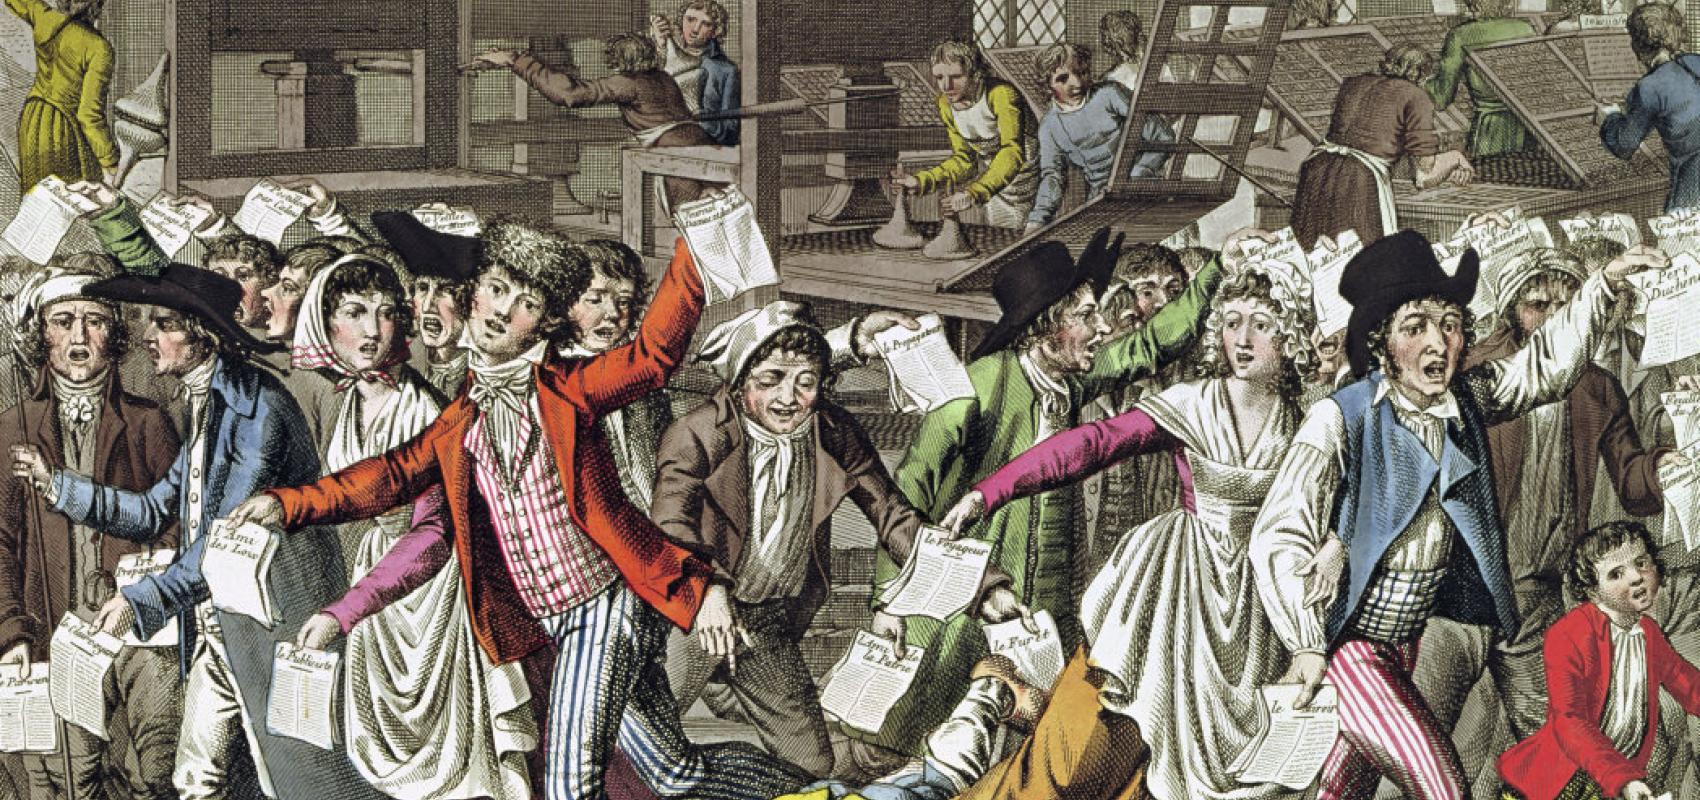 Liberté de la presse, Anonyme, 1792-1794, impression d’après gravure à l’eau-forte. BnF, département des Estampes et de la photographie -  - BnF